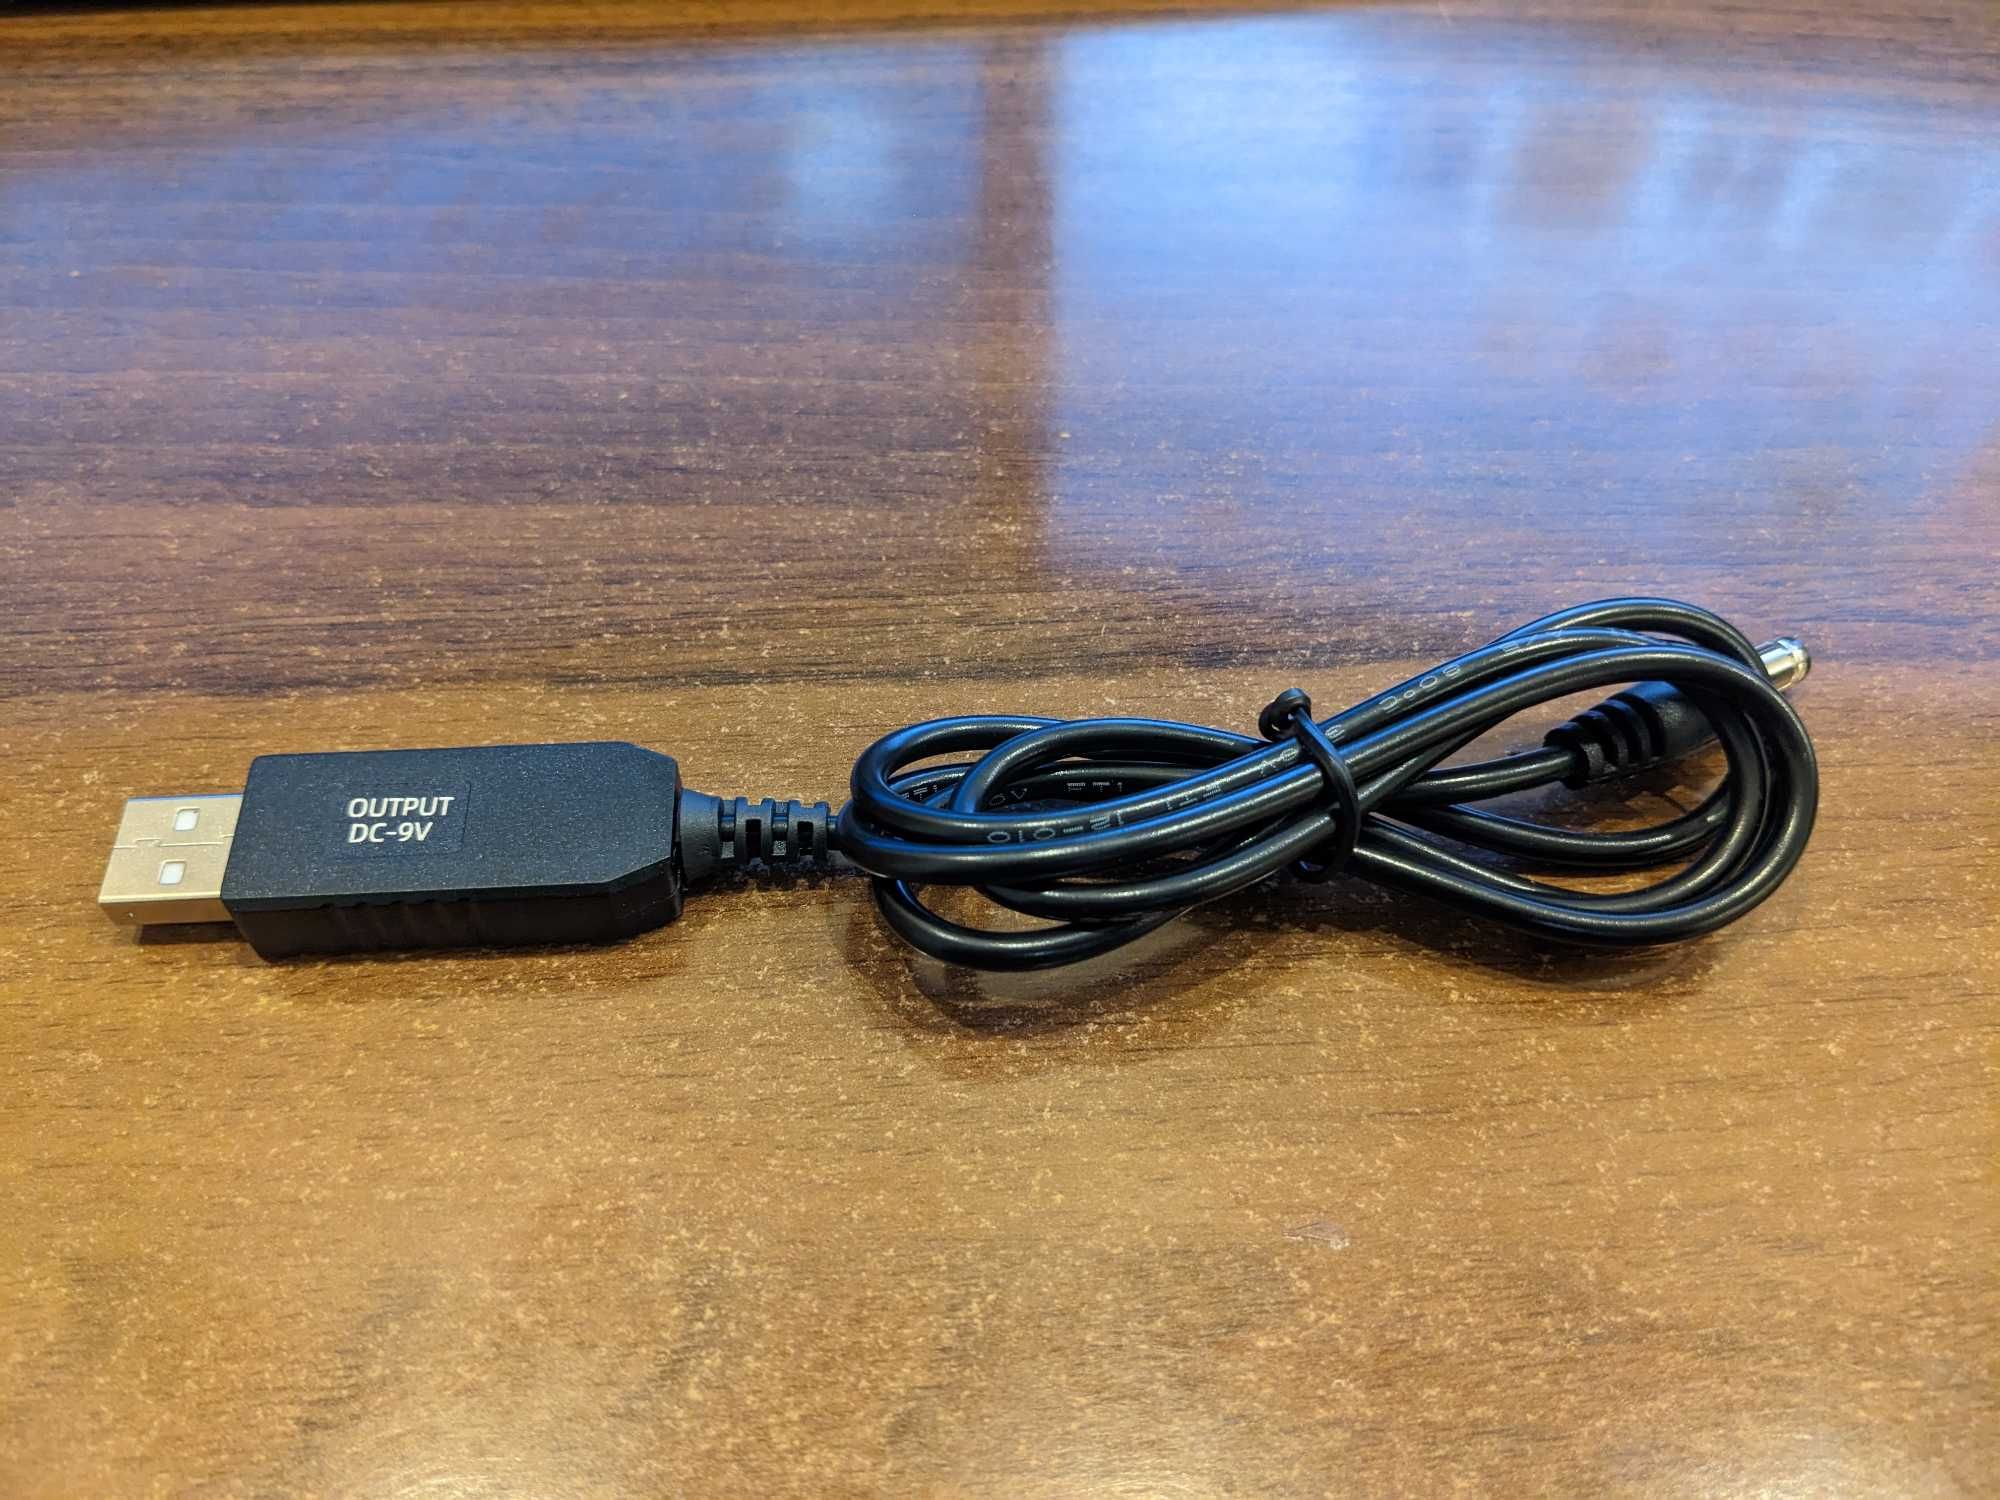 USB кабель для живлення WiFi роутера 5.5*2.1мм - 5, 9V